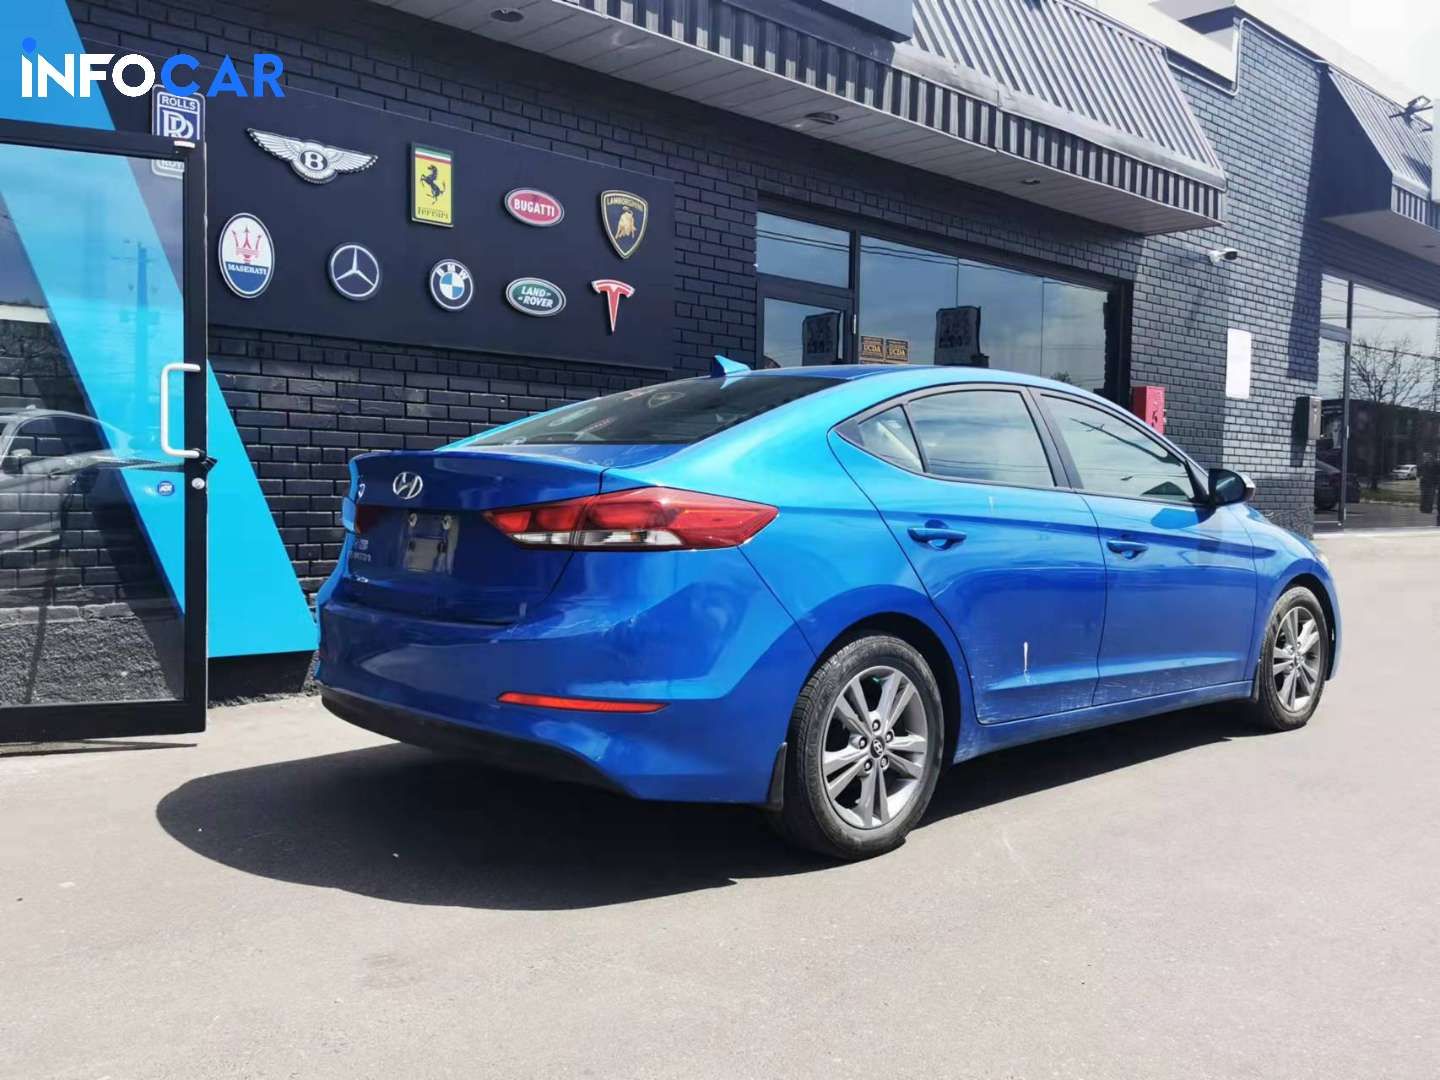 2017 Hyundai Elantra GL - INFOCAR - Toronto Auto Trading Platform